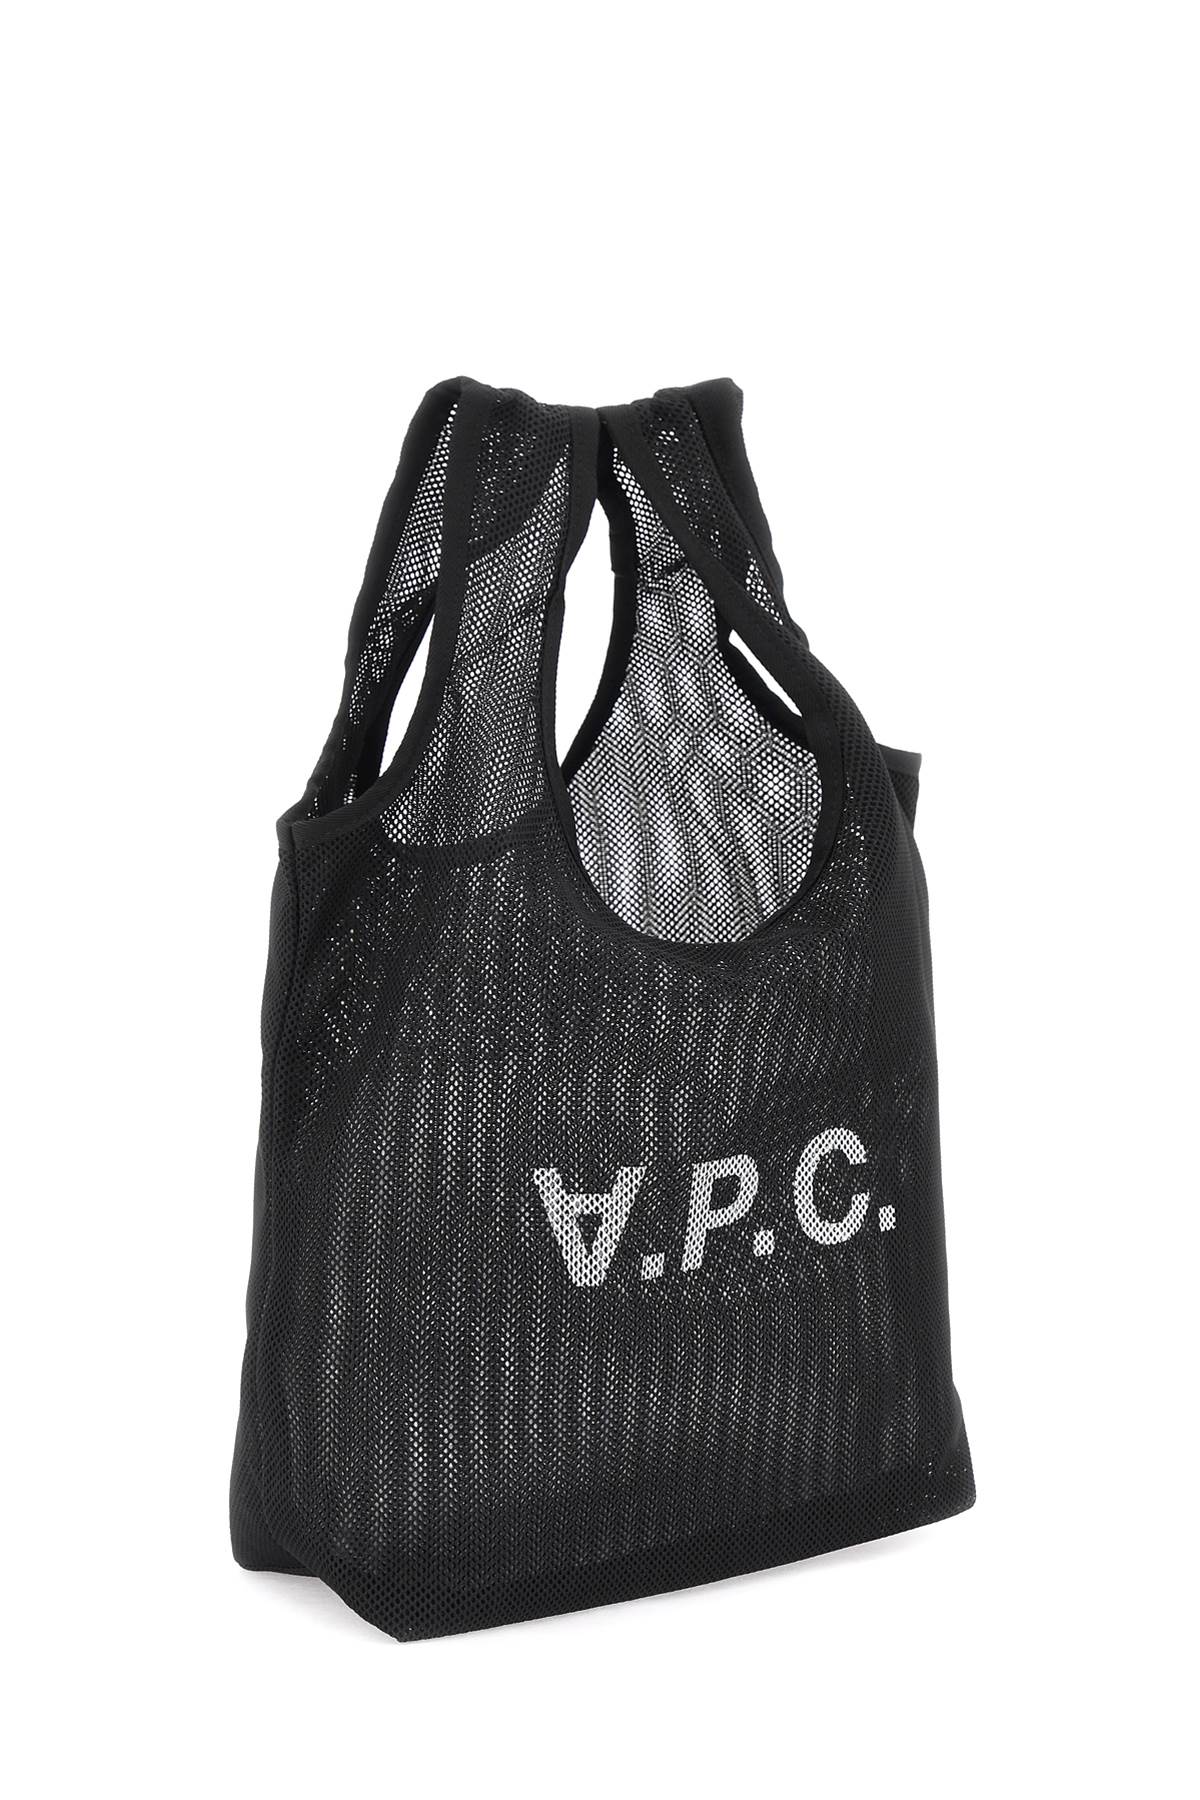 A.P.C. Rebound Tote Bag   Black